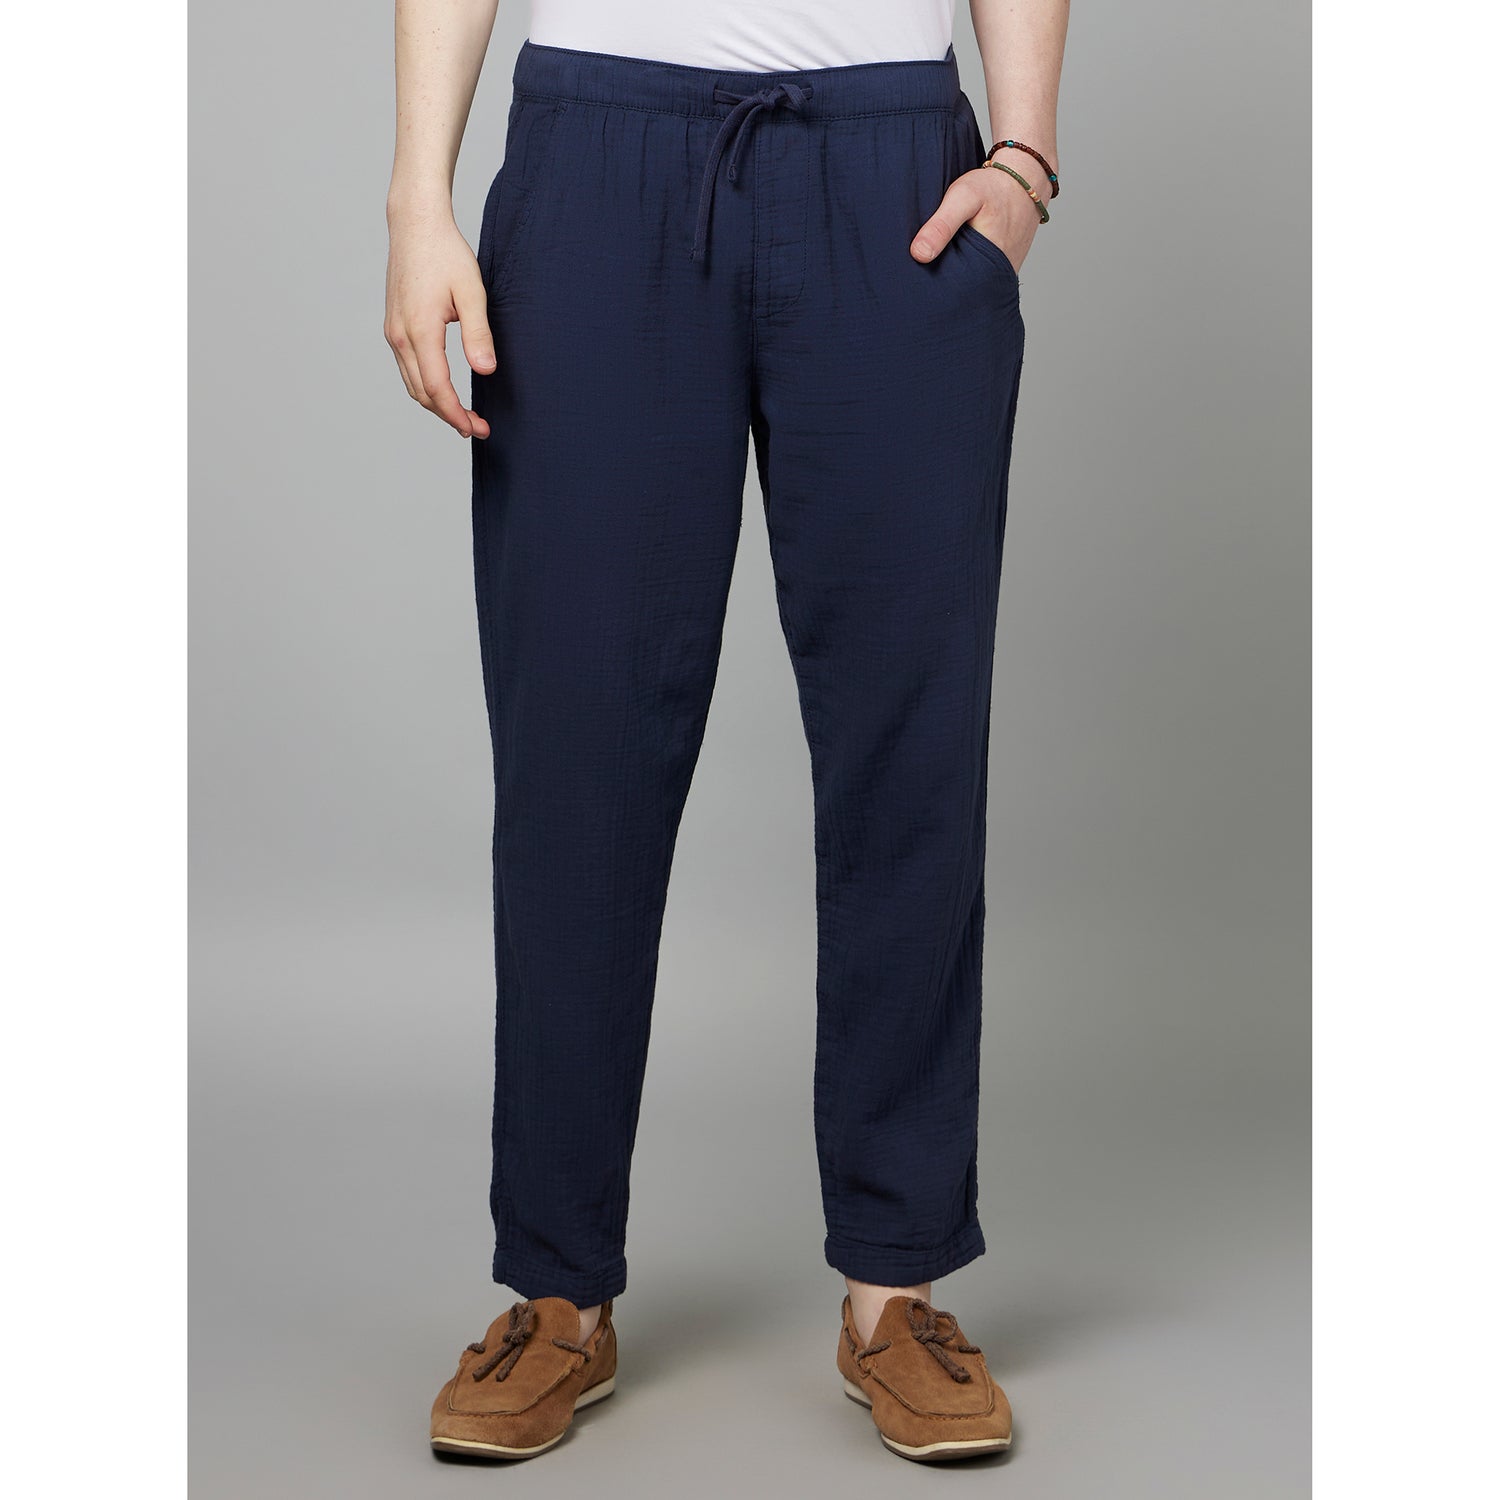 Navy Blue Mid-Rise Classic Slim Fit Plain Cotton Regular Trousers (FOBOGAZE)